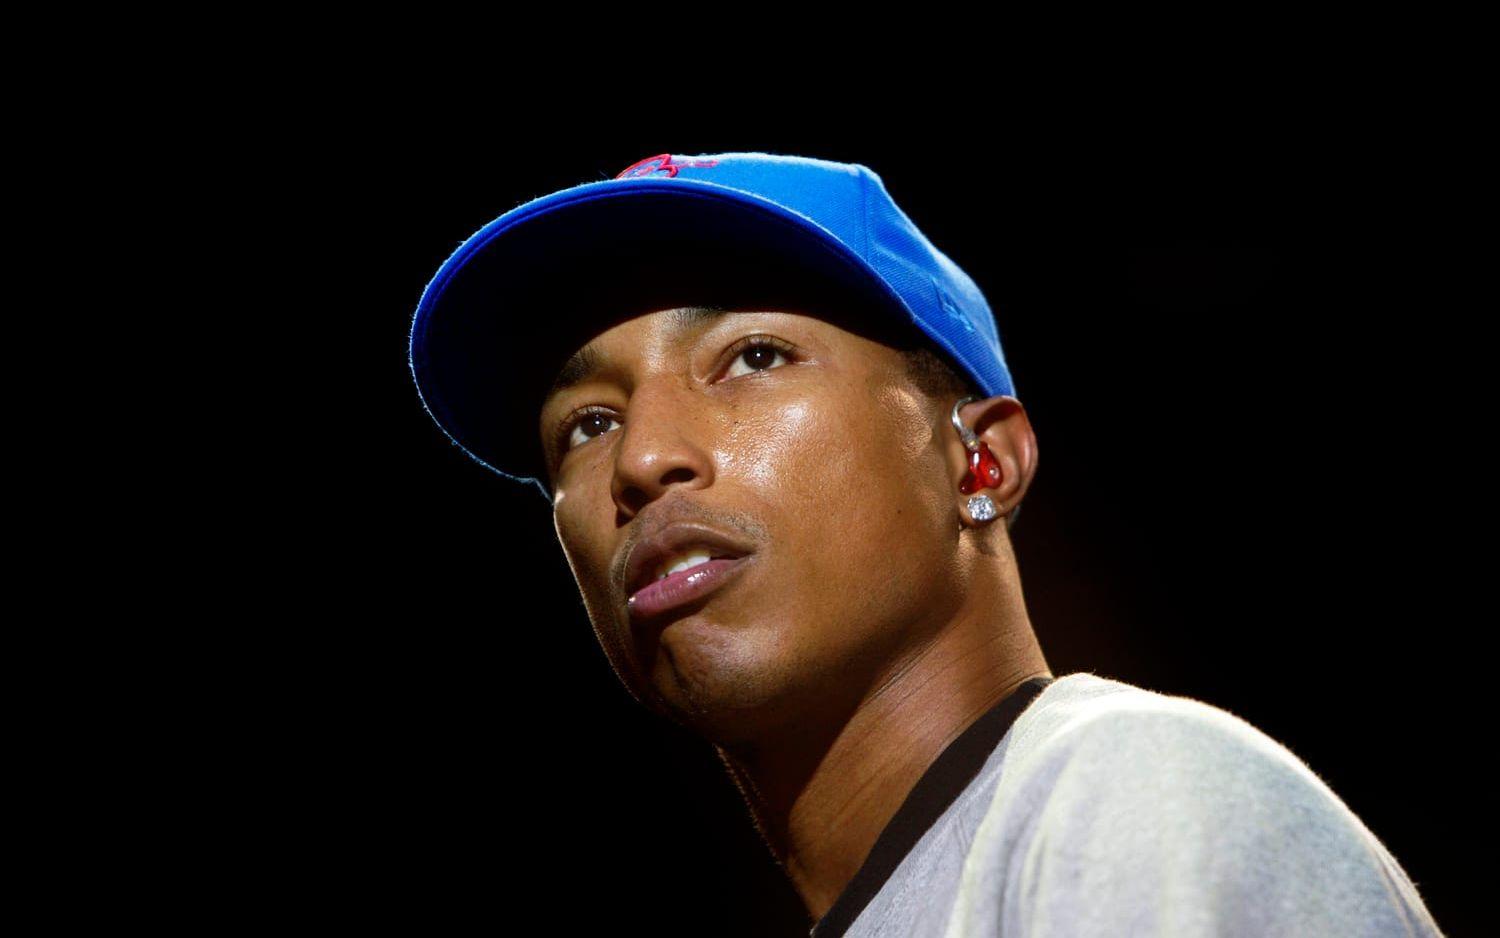 Pharrell Williams är en vampyr. Enligt en fansida är förklaringen enkel: Pharrell åldras inte, utan för varje nytt album ser han lika "ung" ut. Artisten själv förnekar saken i Time out London, där han bedyrar att han varken är vampyr eller dricker andra människors blod. Bild: Scanpix.